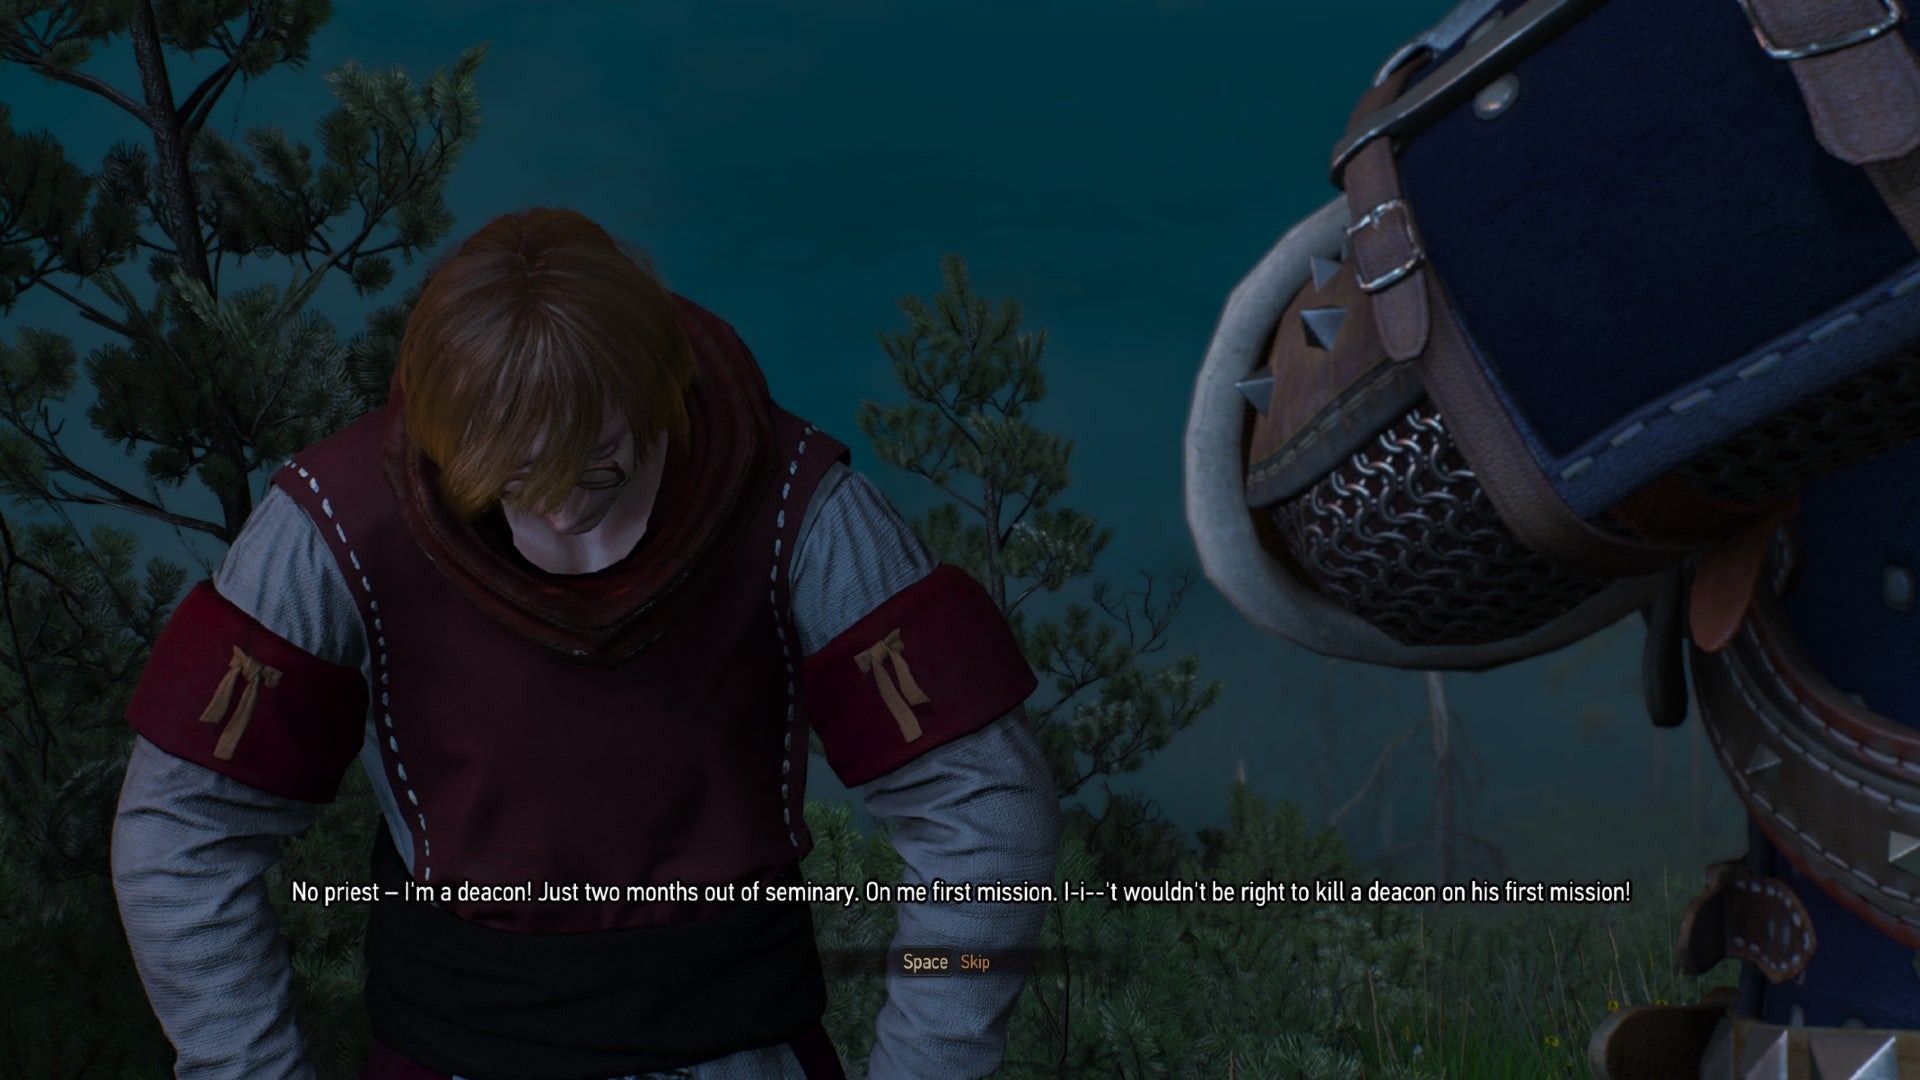 Witcher 3 next gen screenshot showing the eternal fire priest.